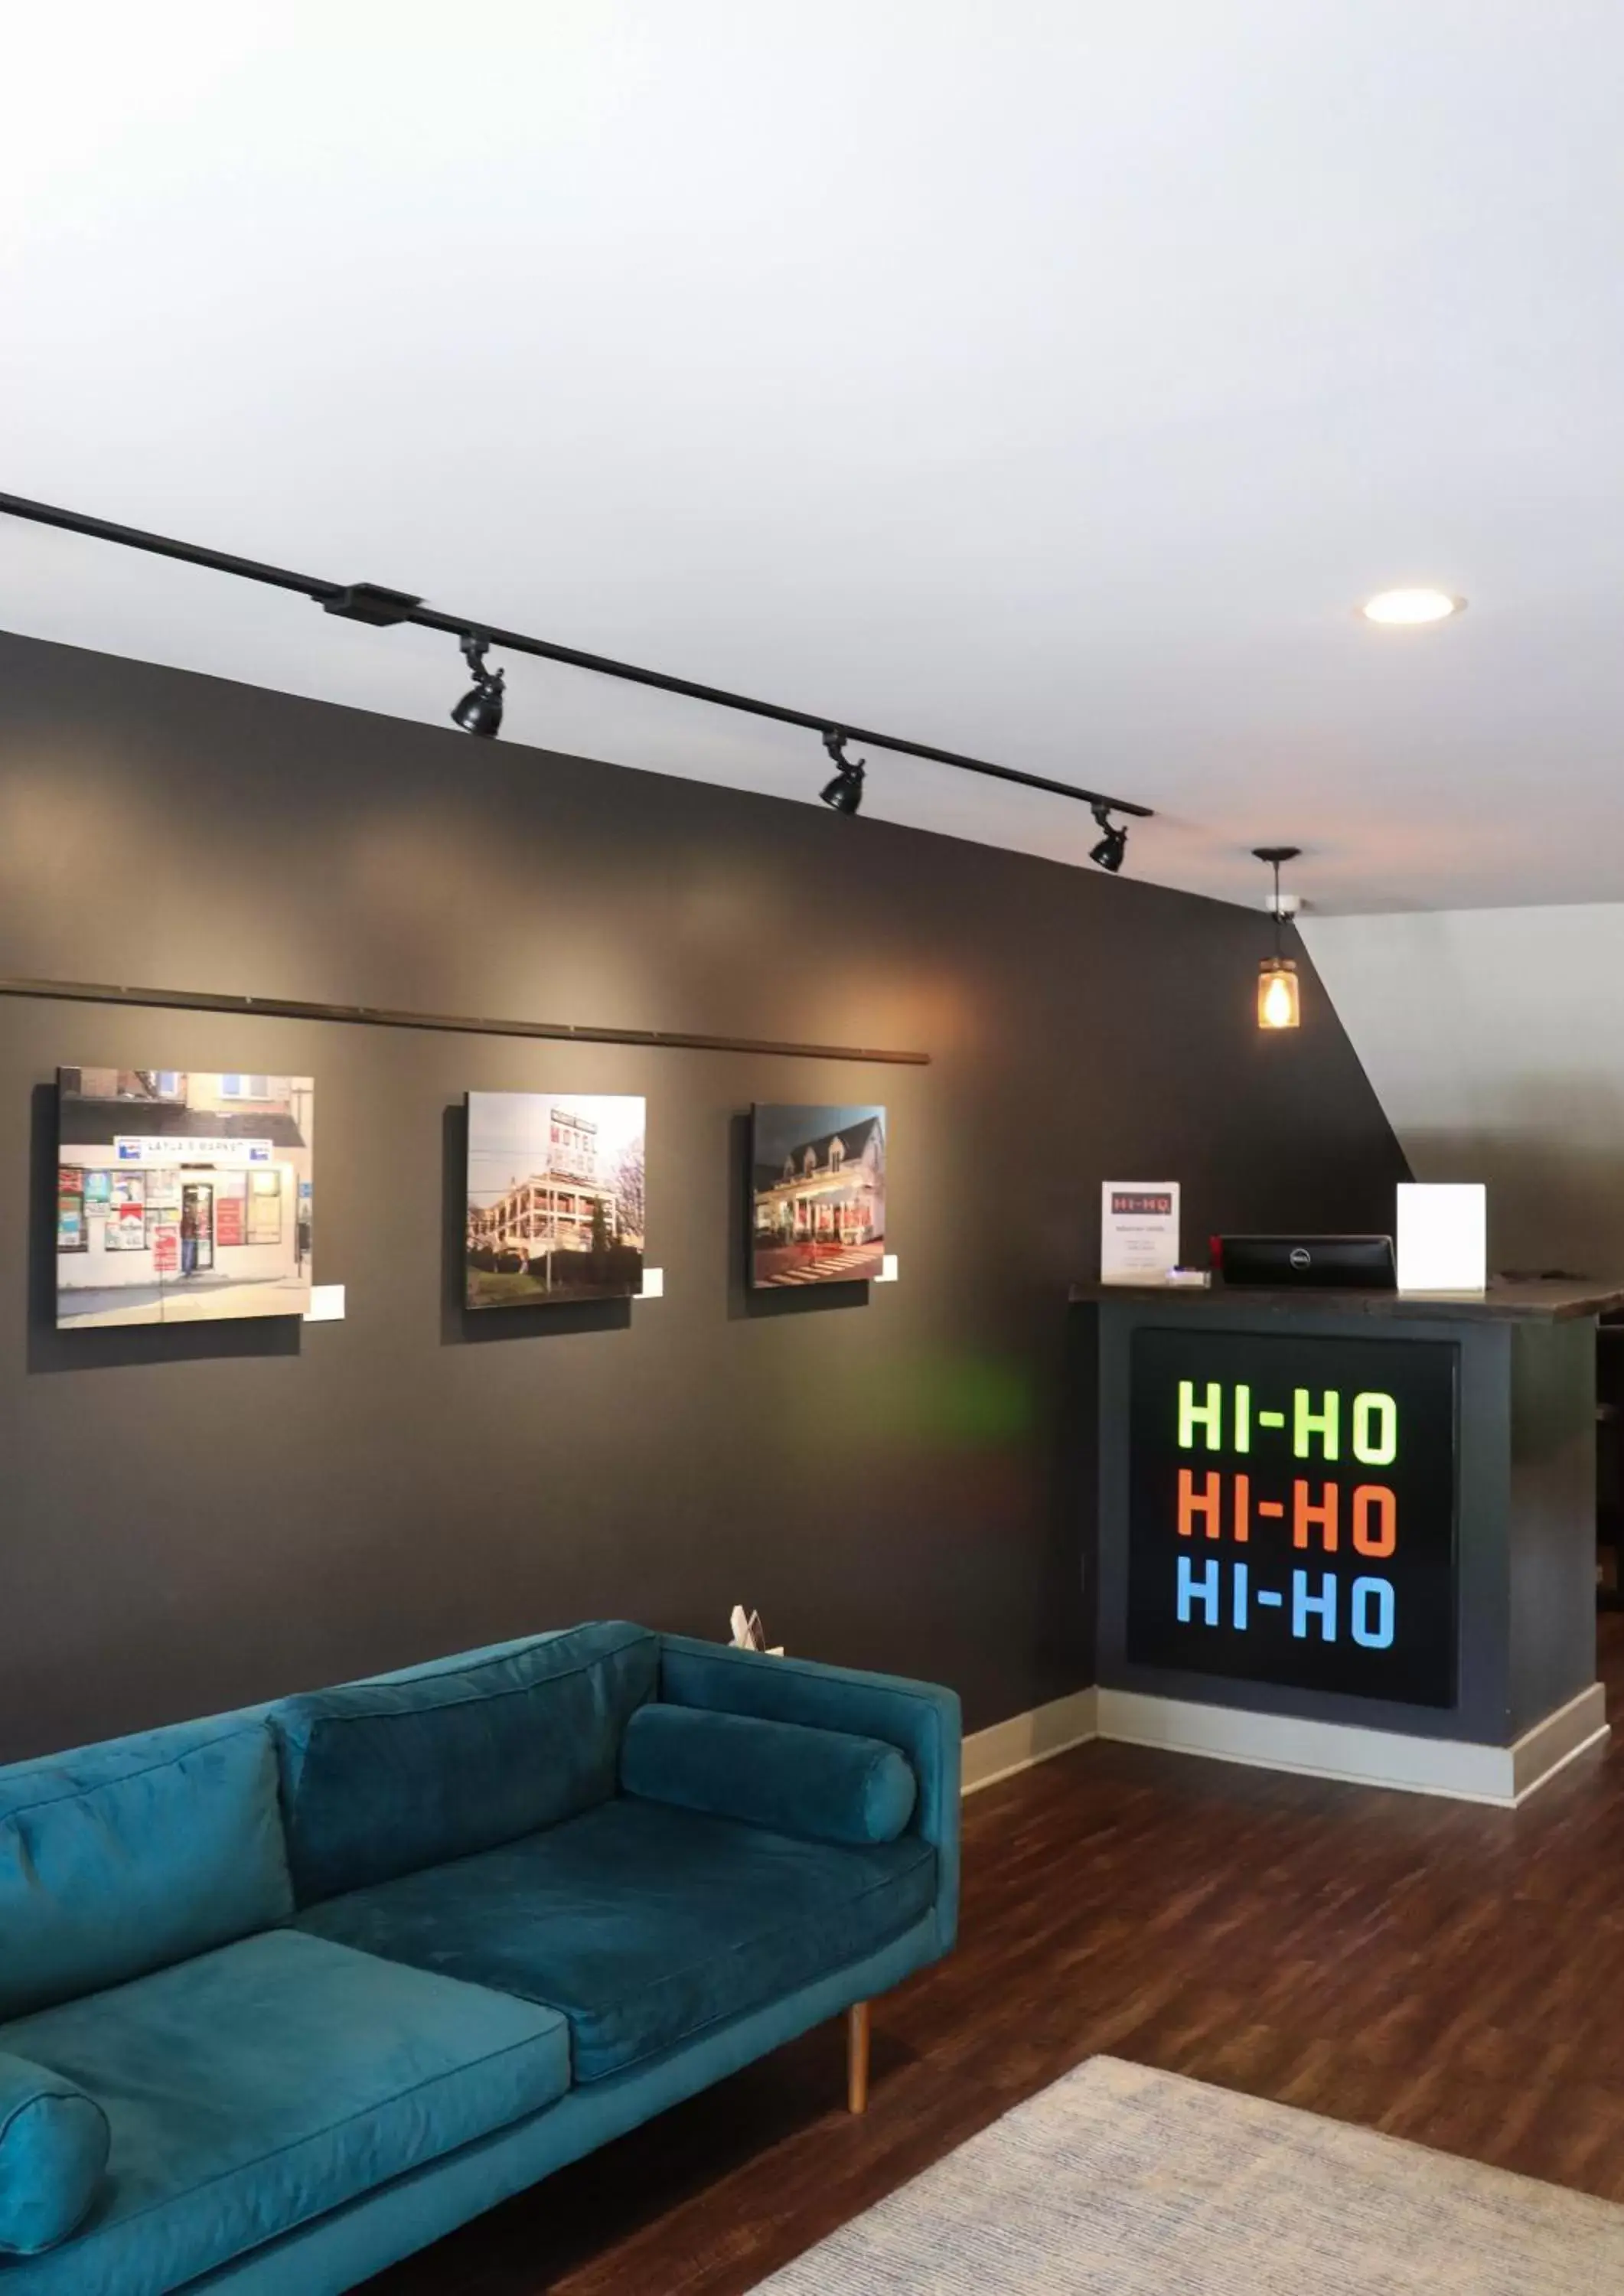 Lobby or reception in Hi-Ho: A Hi-Tech Hotel